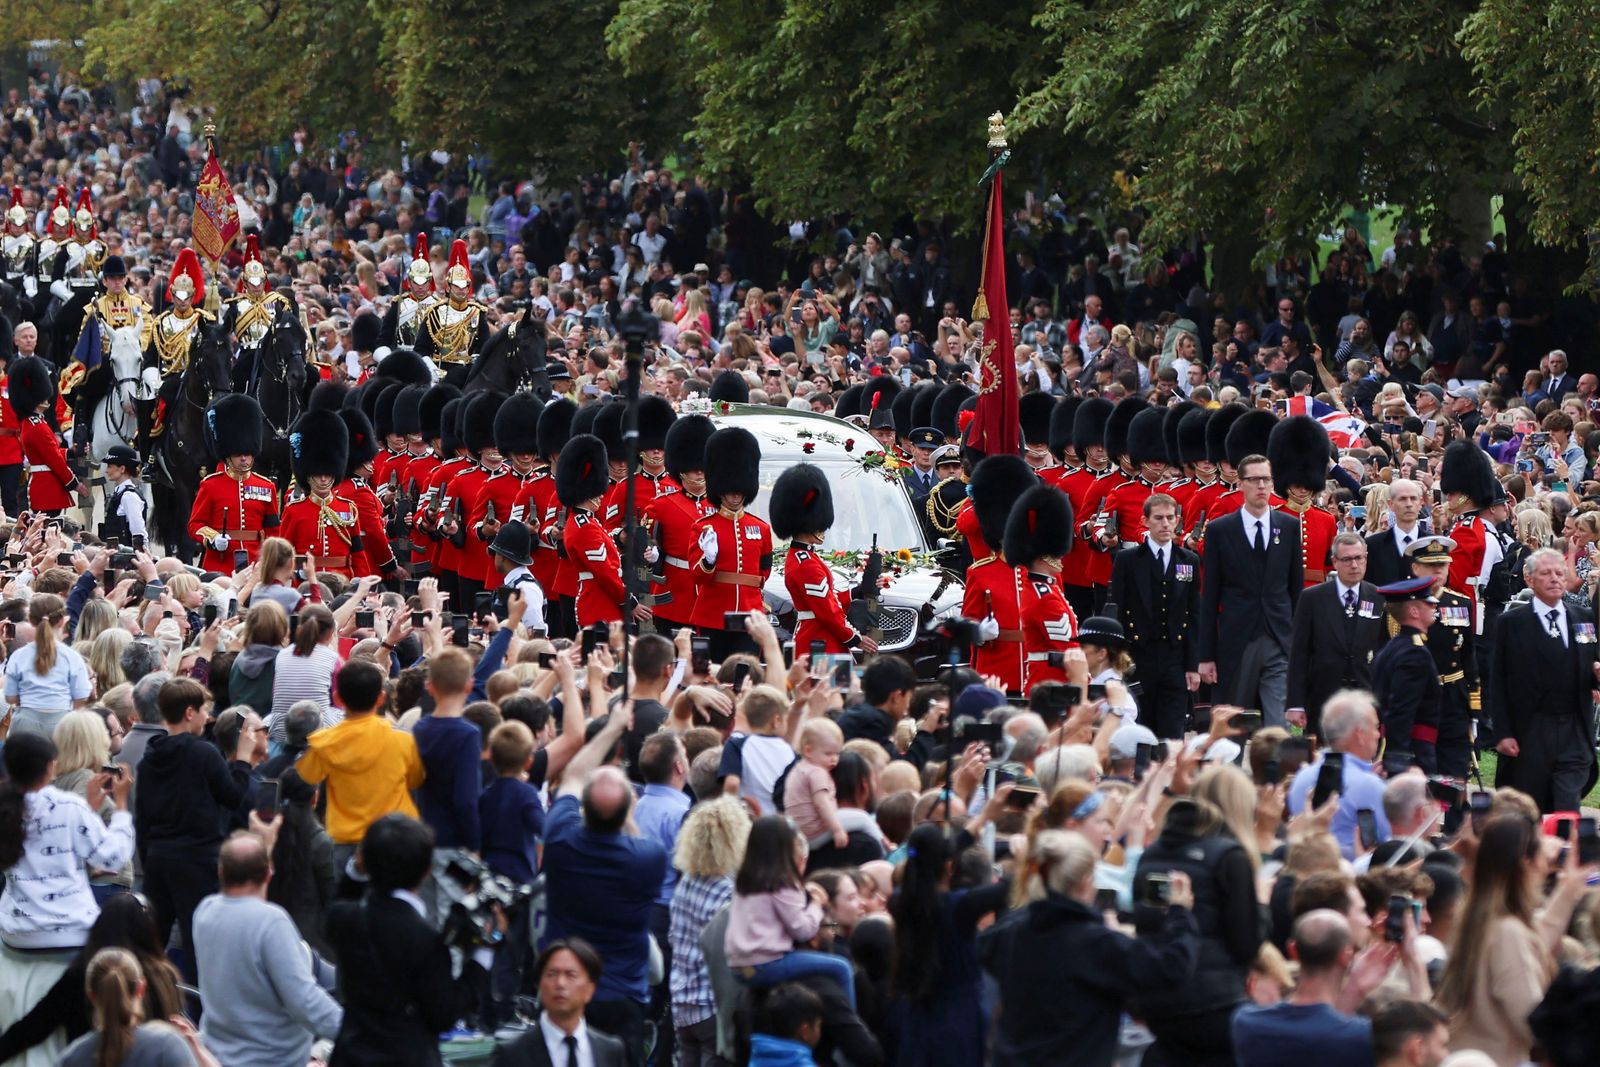 سيارة تحمل نعش الملكة إليزابيث الثانية تشق طريقها عبر الحشود إلى قلعة وندسور غربي لندن- 19 سبتمبر 2022 - REUTERS